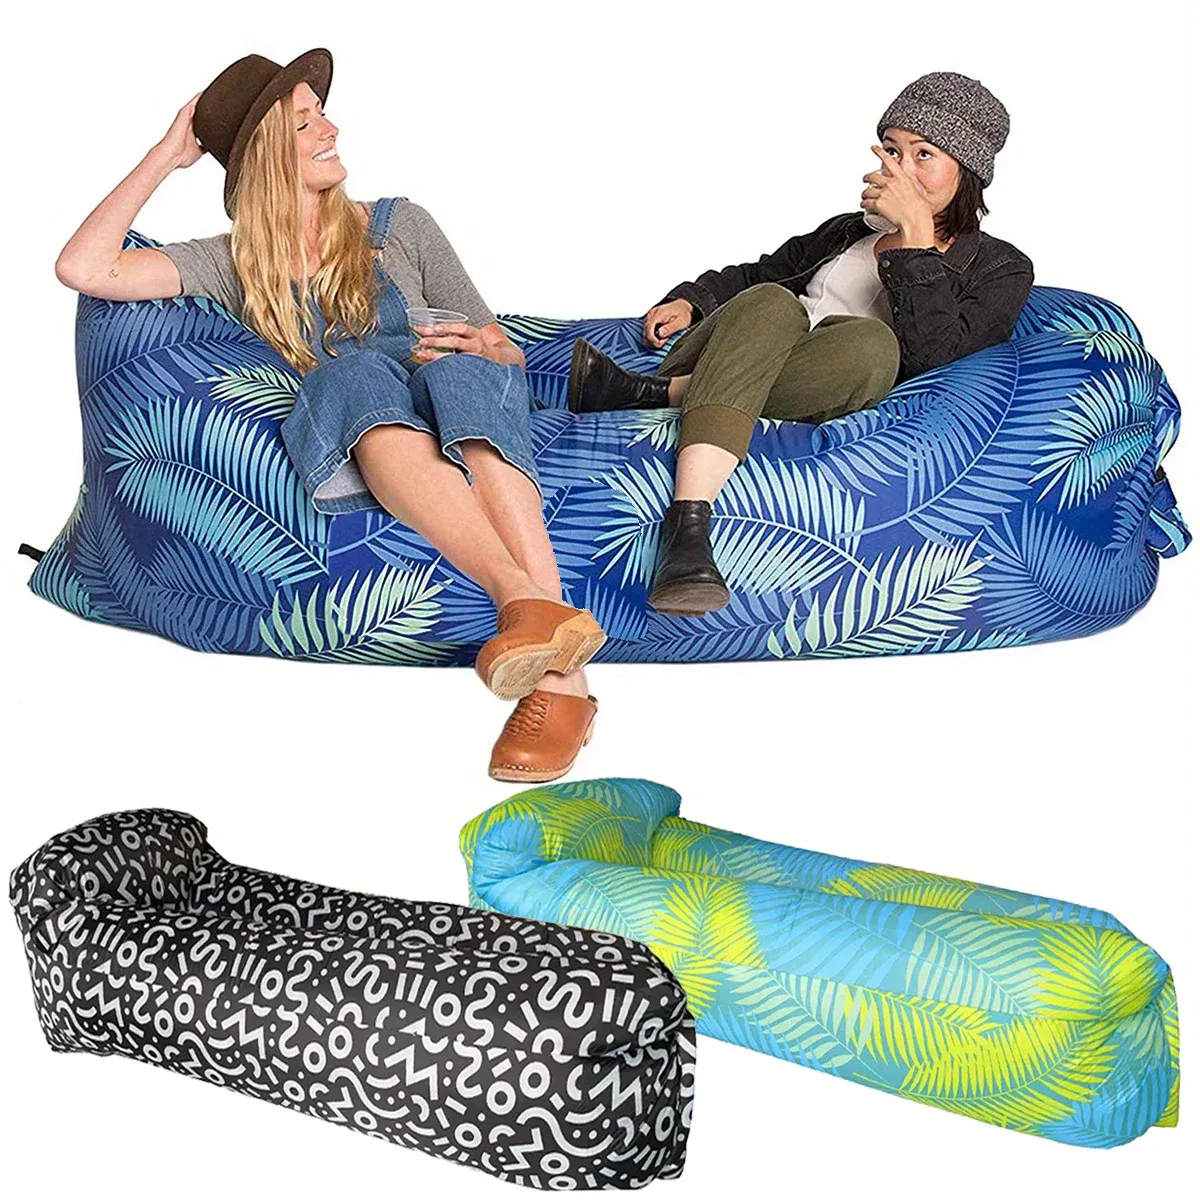 Mat bärbar uppblåsbar soffa camping Sovplatta Madrass Outdoor Air Cushion Beach Mat Folding Bed Waterproof för resevandring